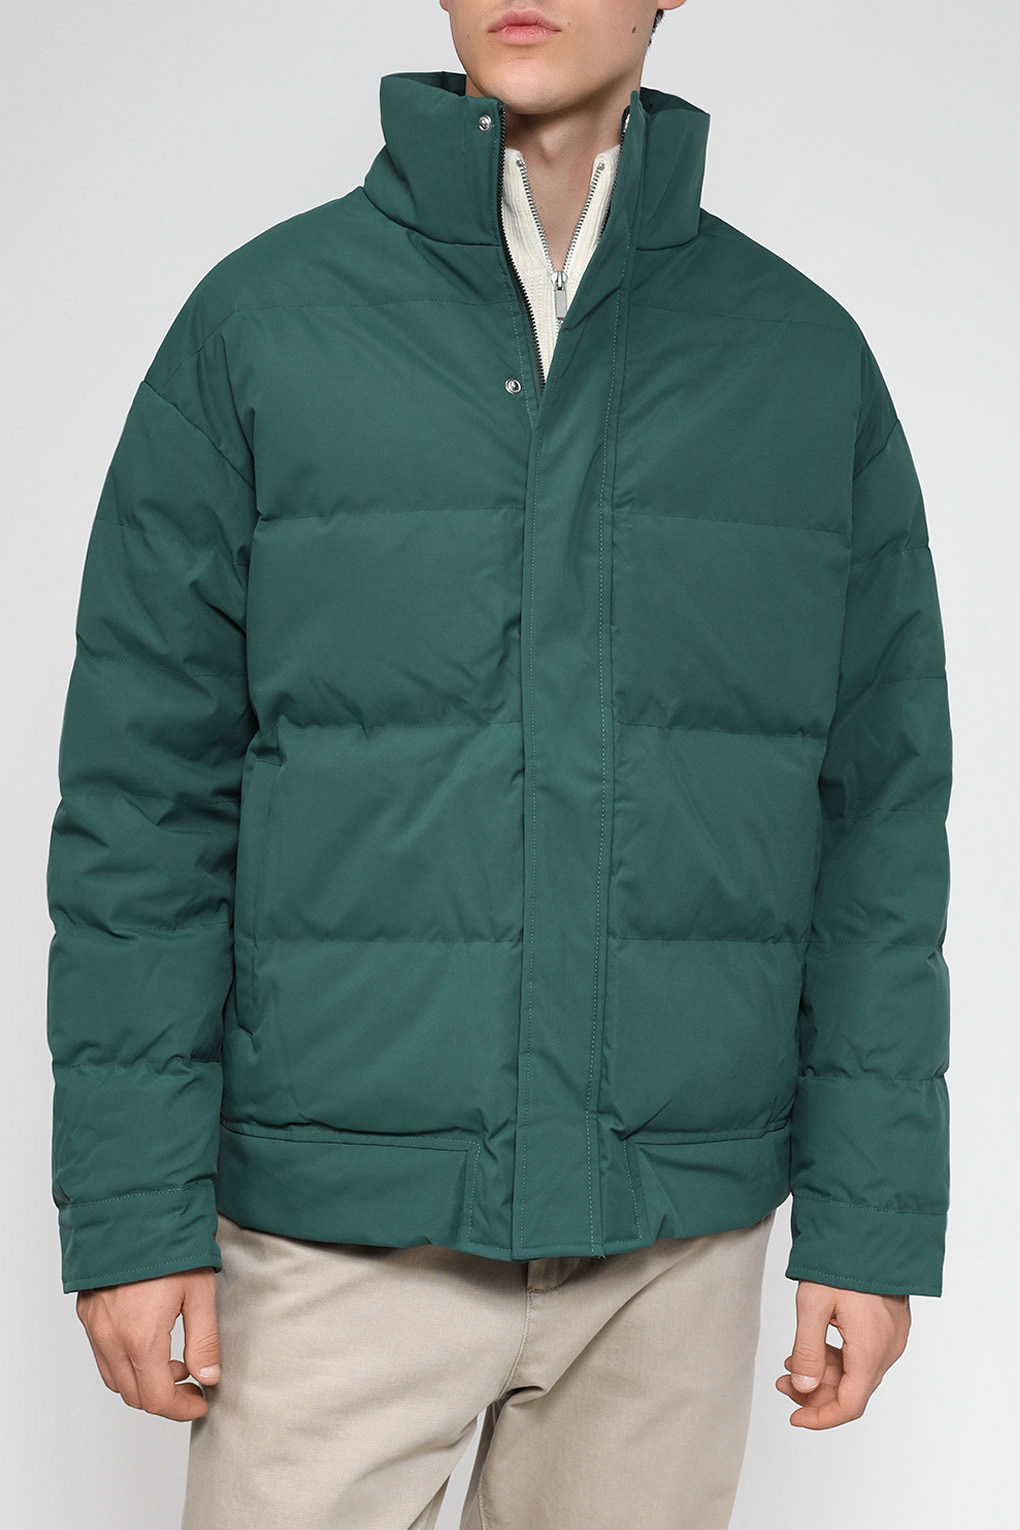 Куртка мужская D.Molina DM23079285-042 зеленая 48 RU